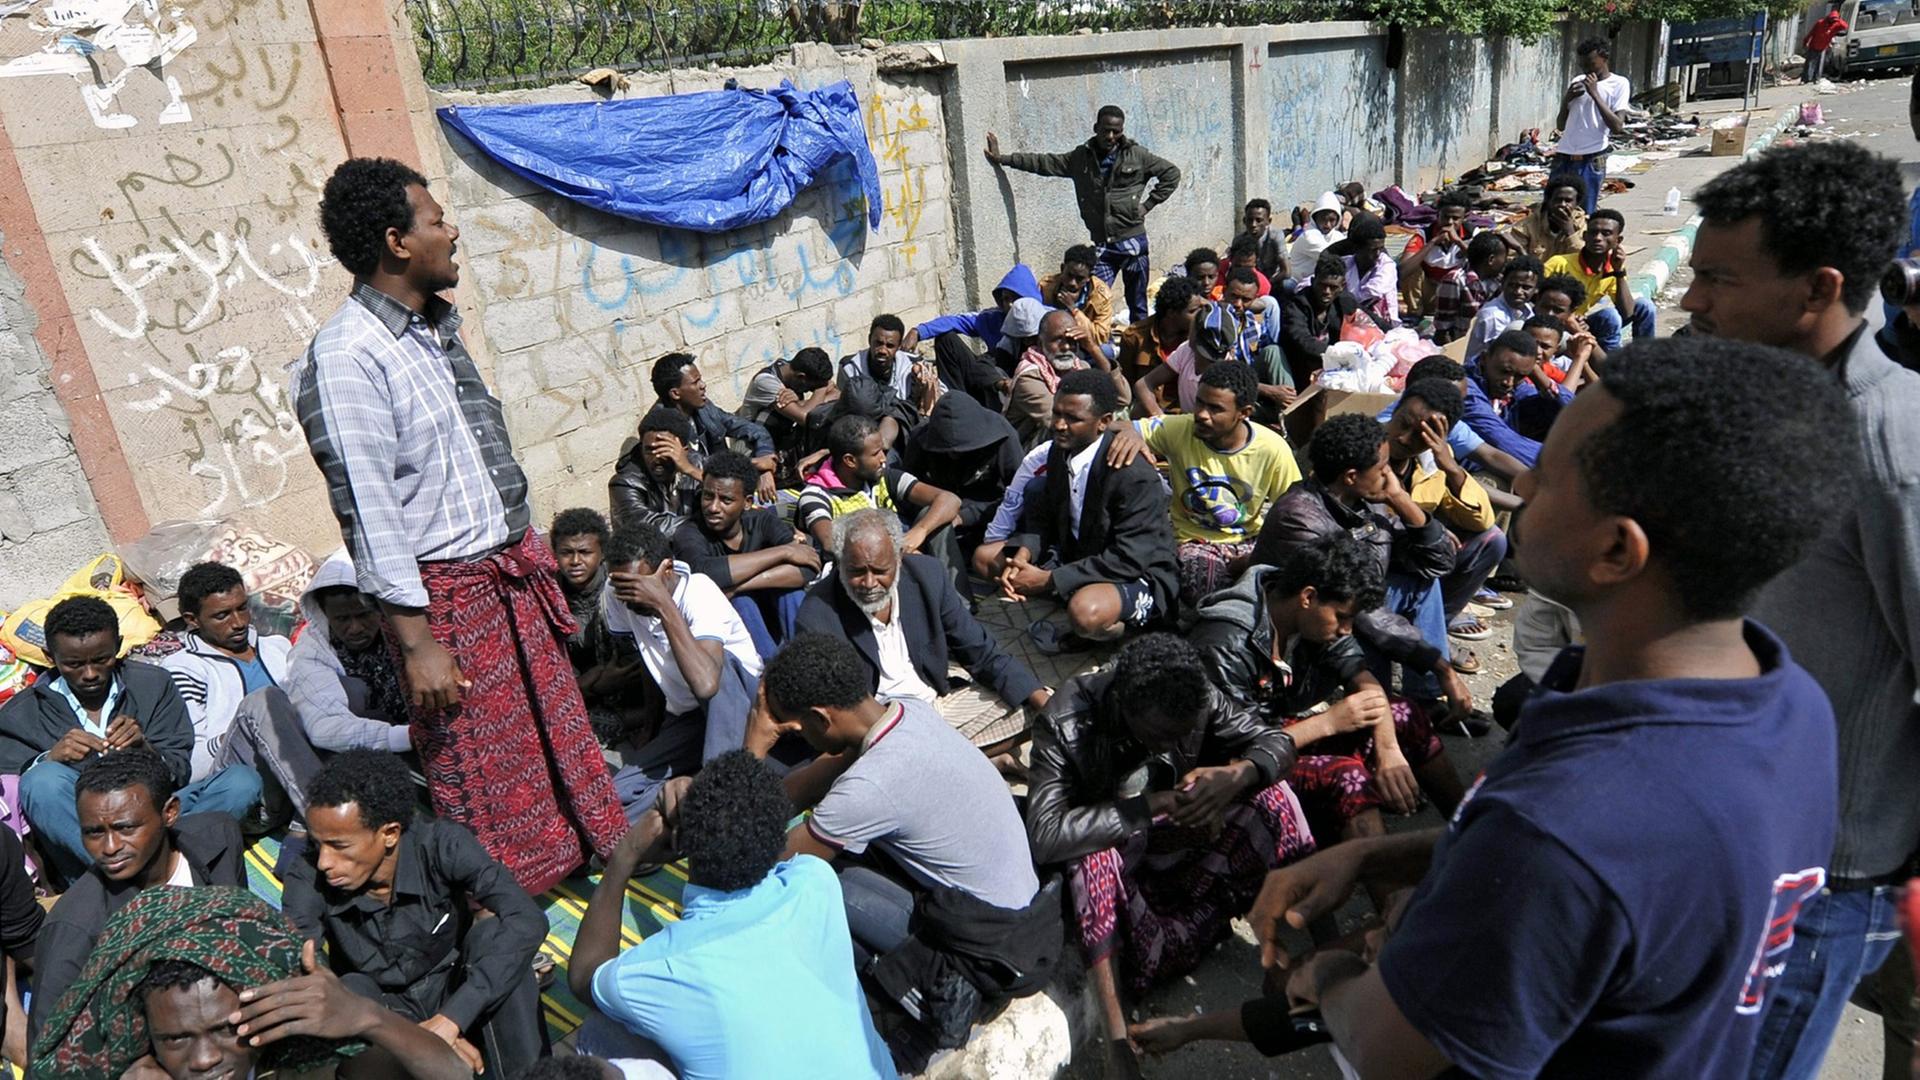 Eritreische Flüchtlinge warten vor einem UN-Flüchtlingslager in Sana, Jemen, auf Hilfe.